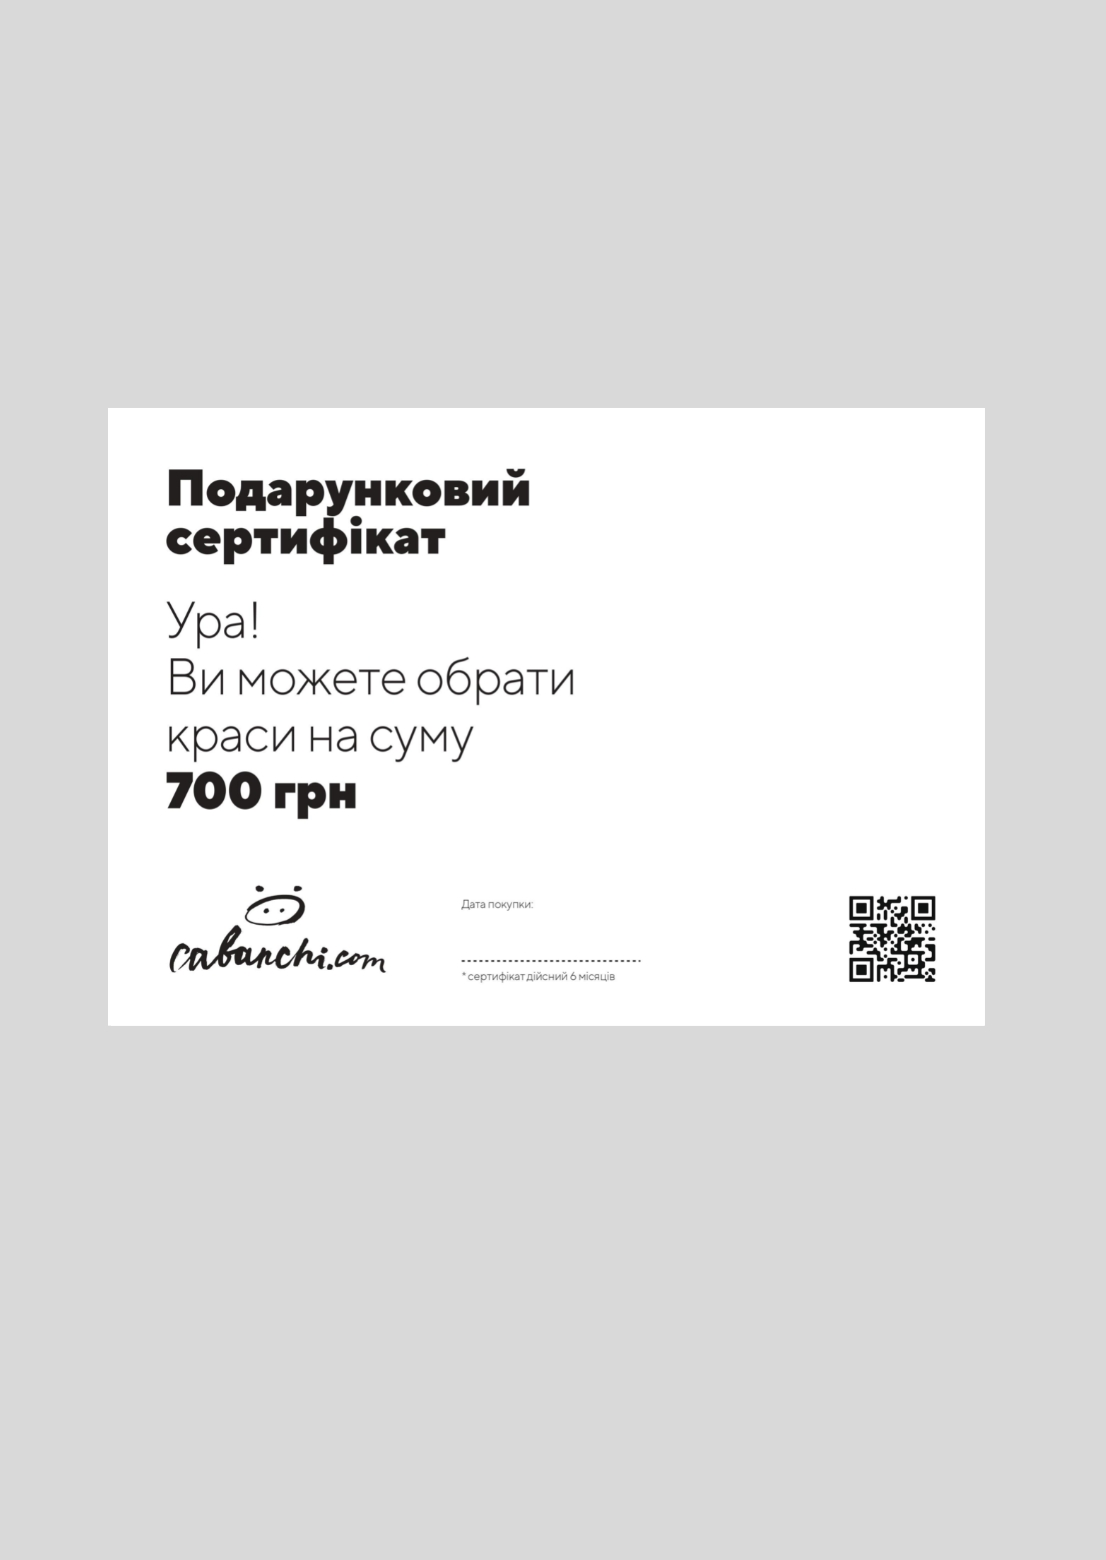 Подарочный сертификат номиналом 700 грн